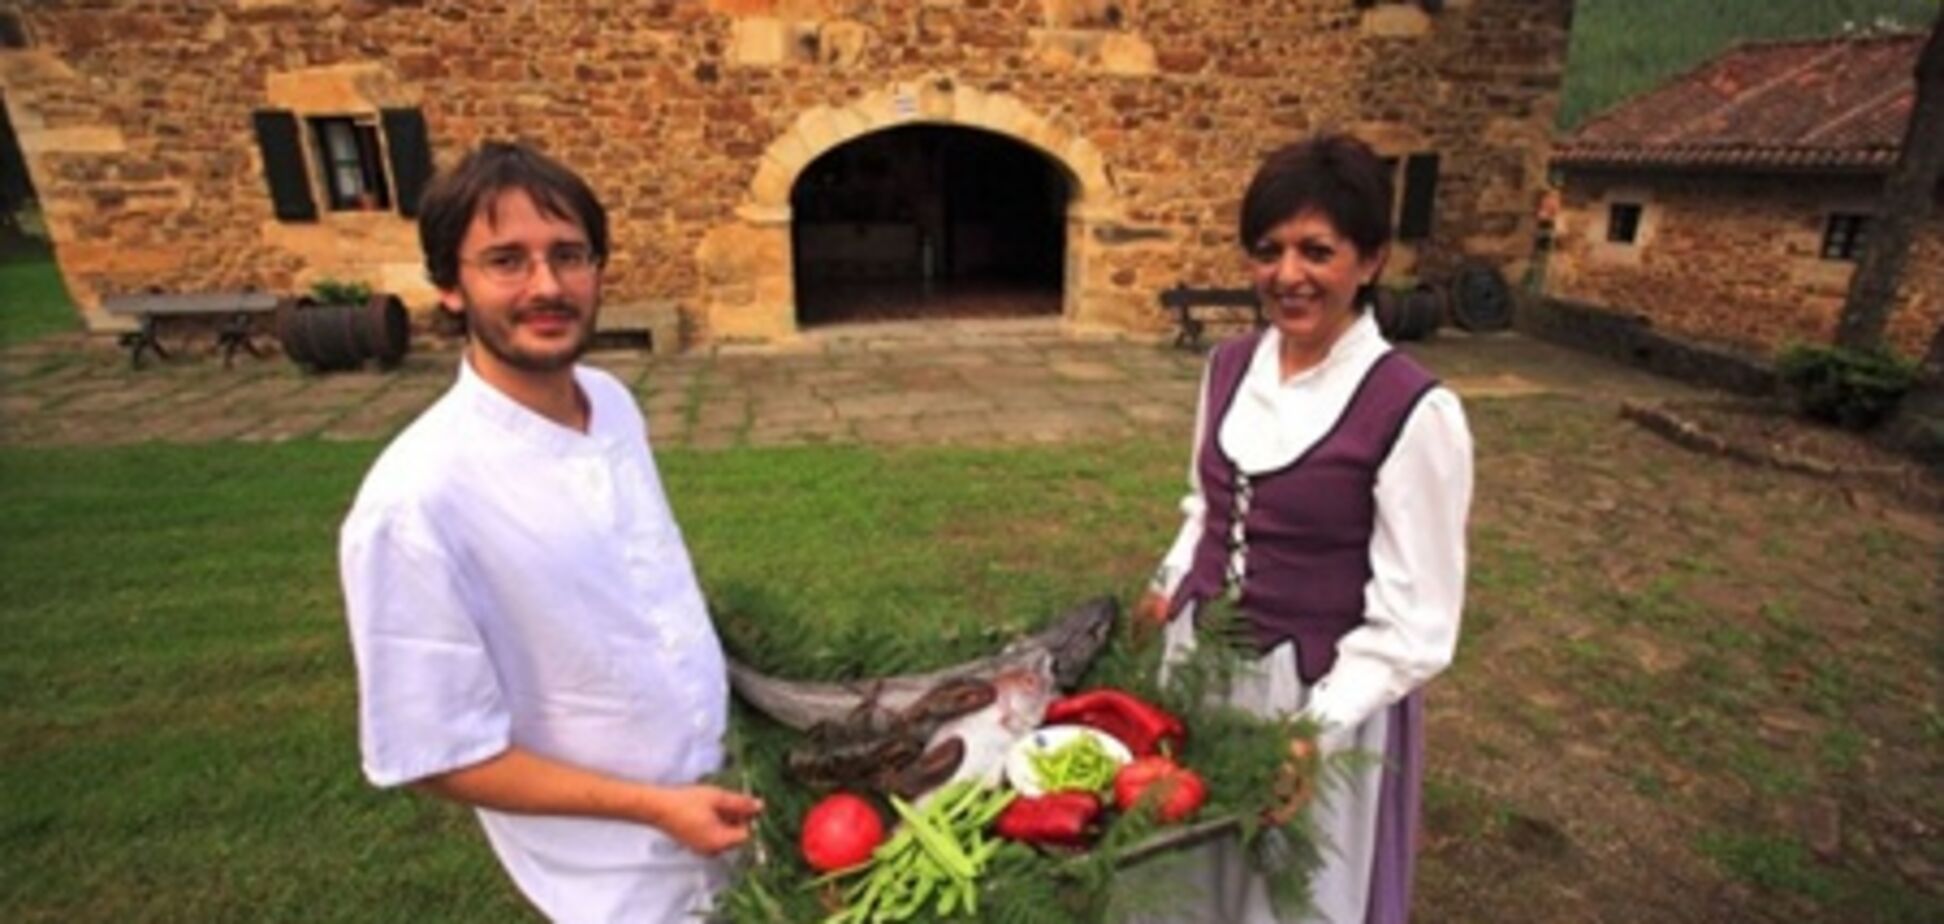 Первый винно-кулинарный клуб для туристов создан в Стране Басков